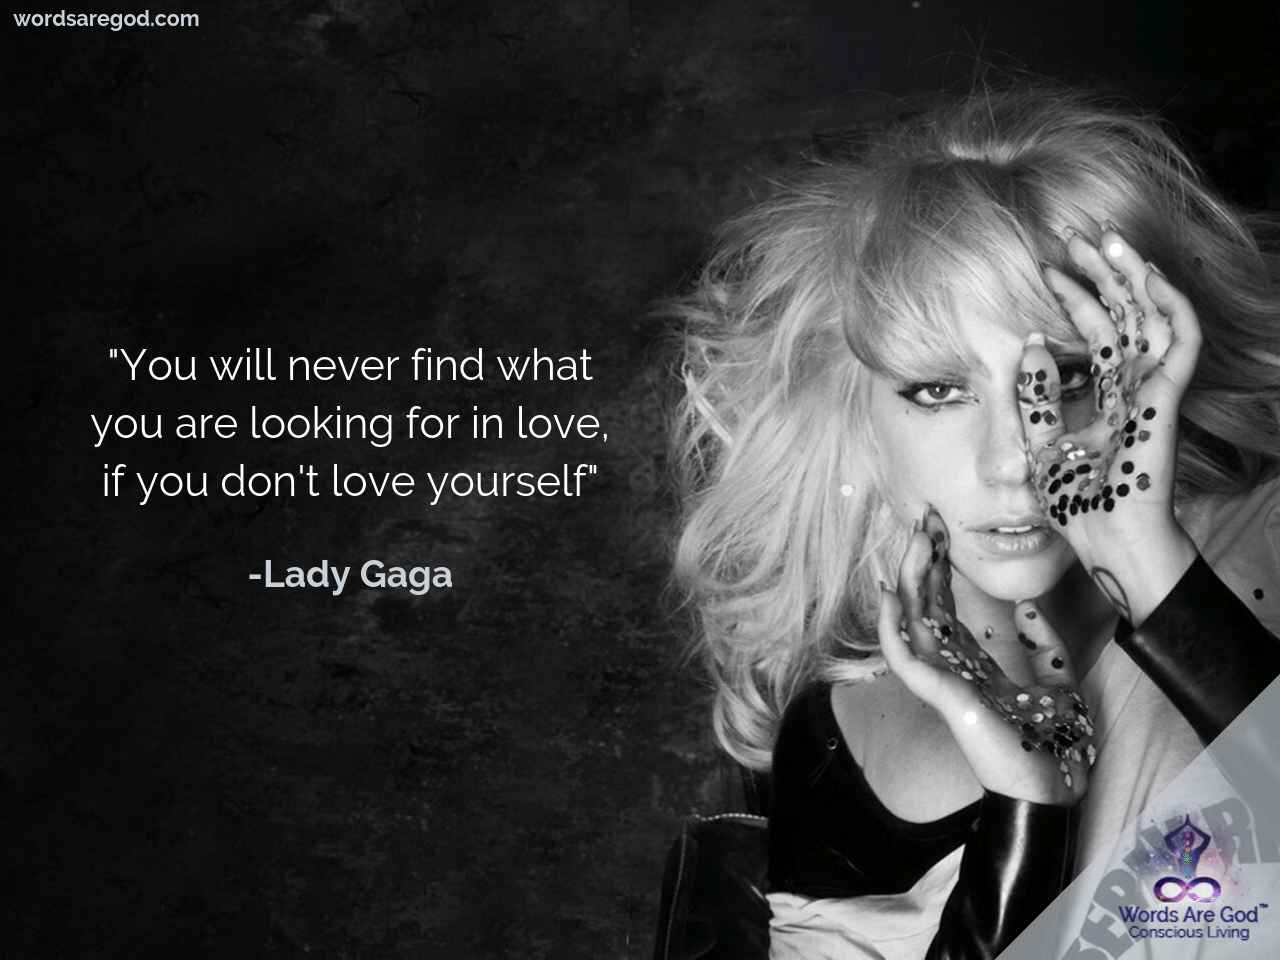 Lady Gaga Best Quote by Lady Gaga